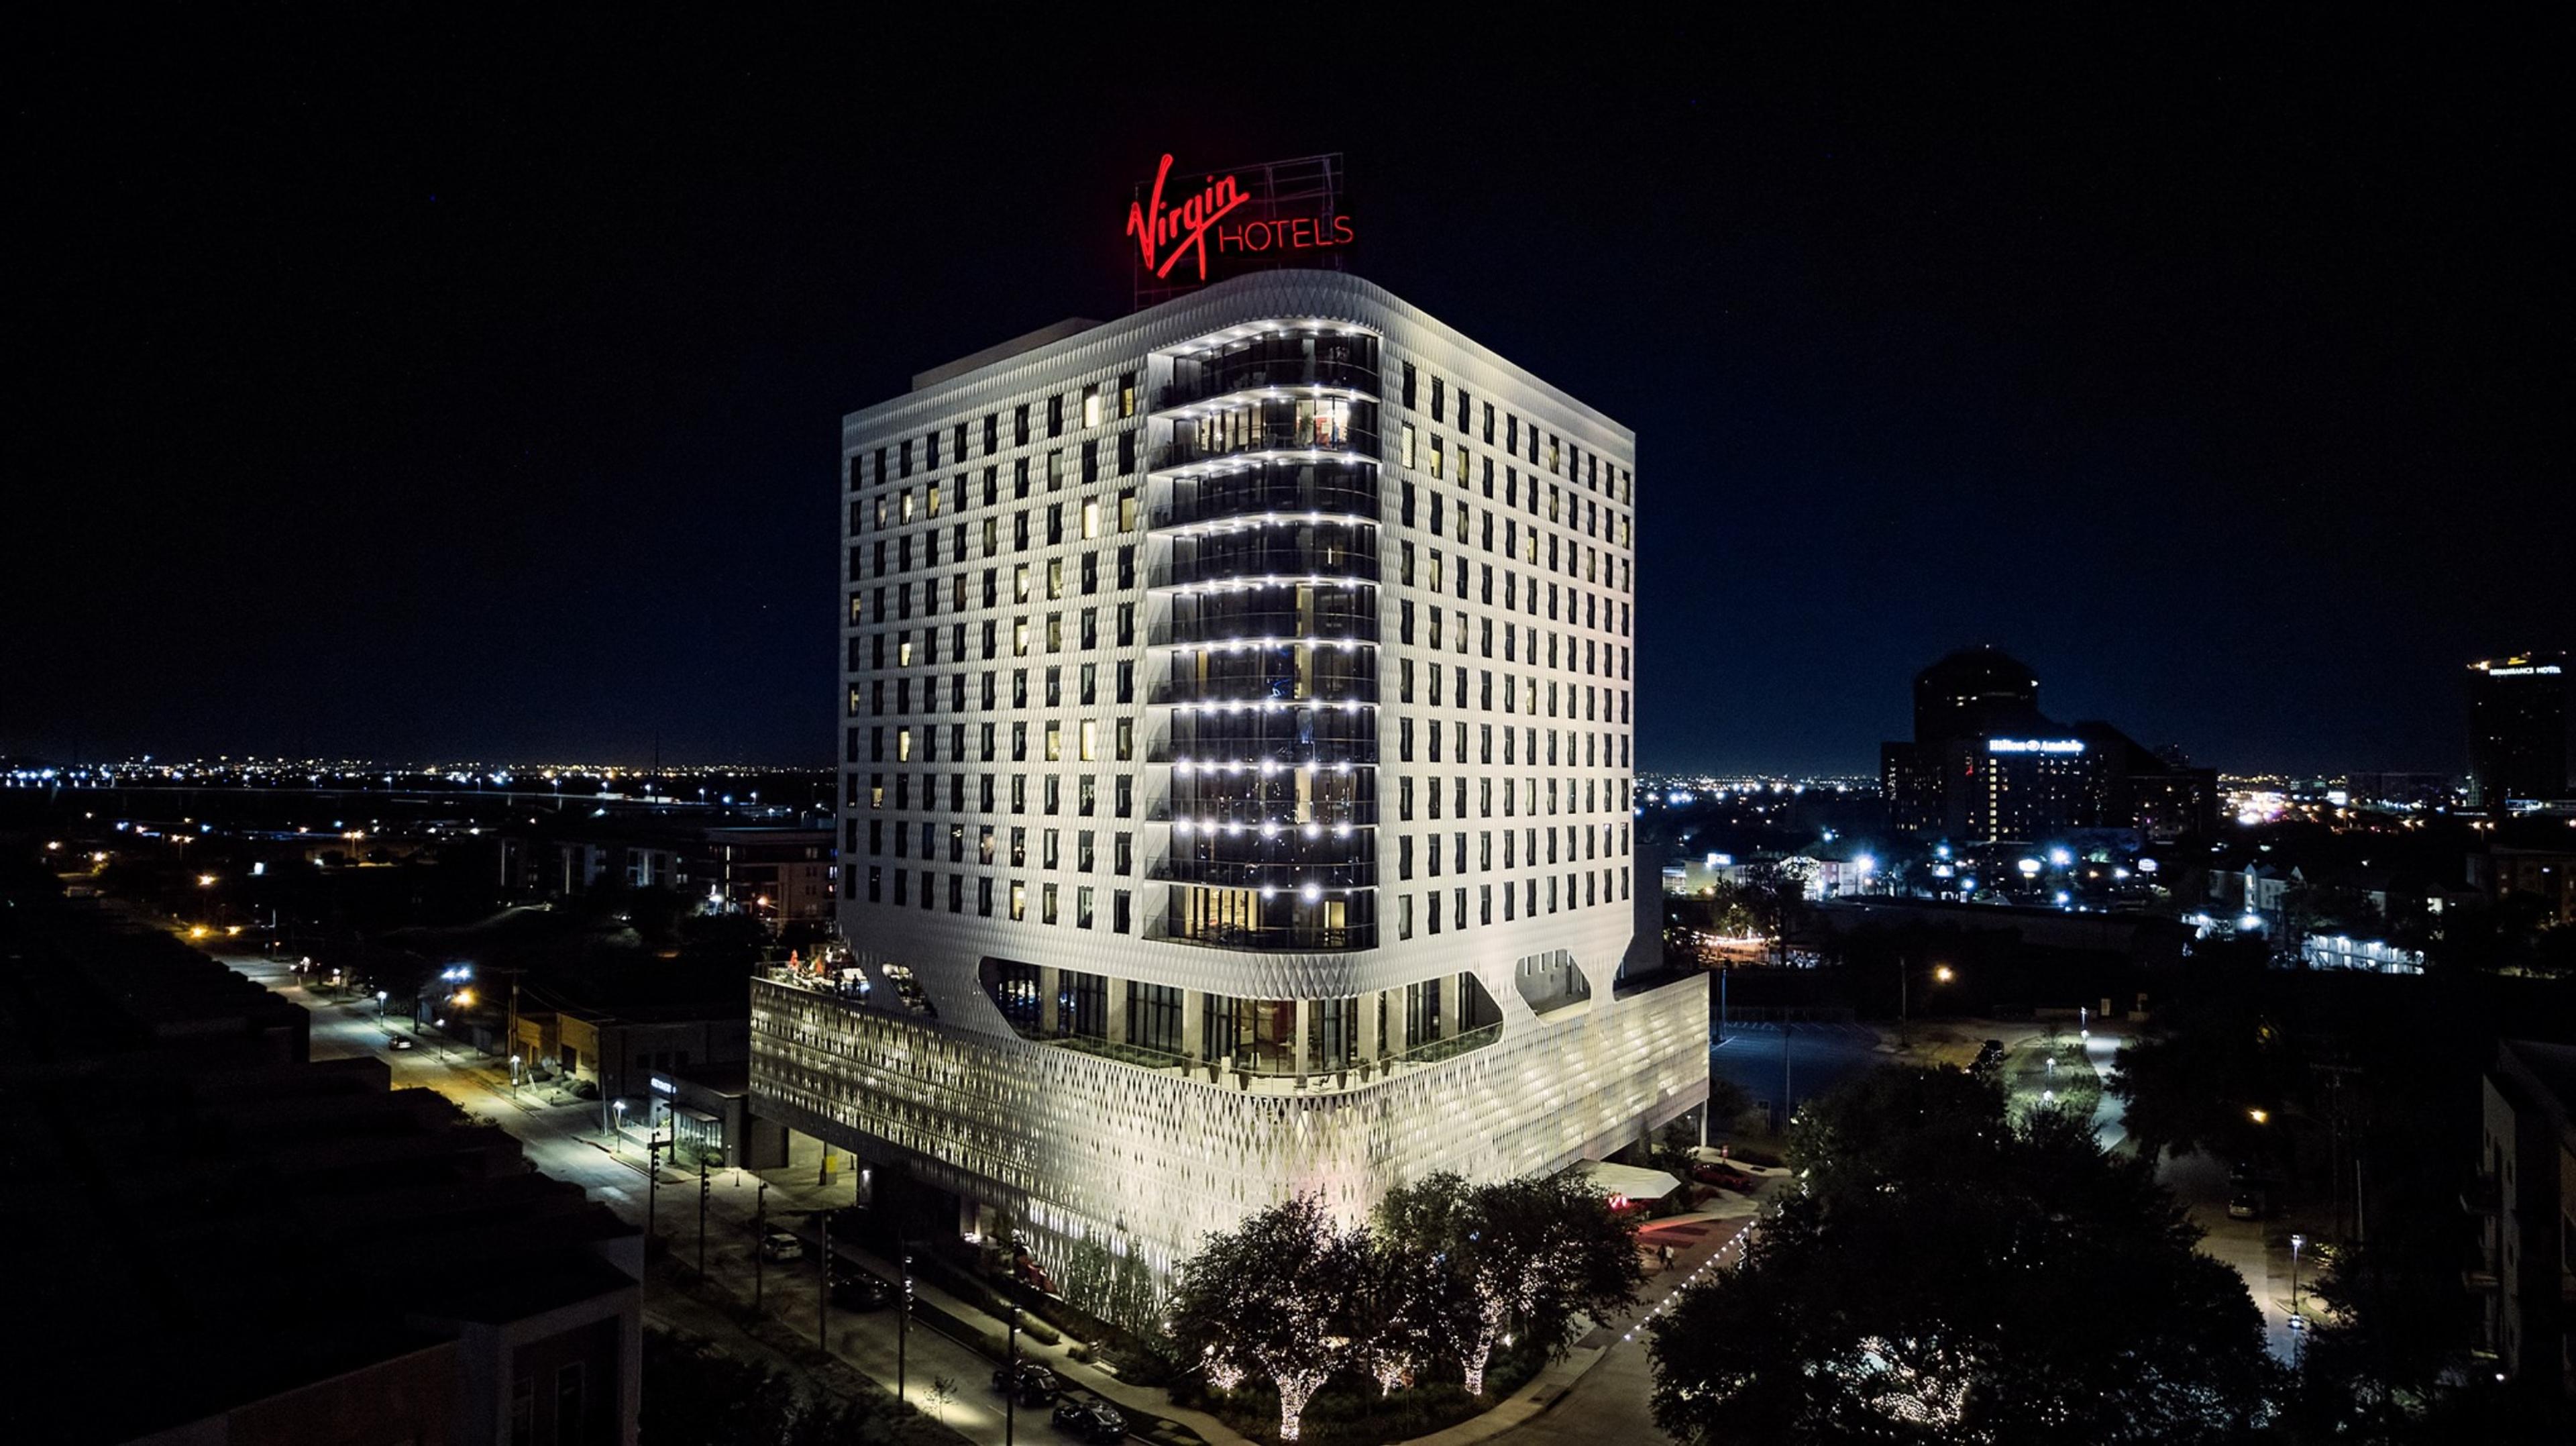 Virgin Hotels - Dallas